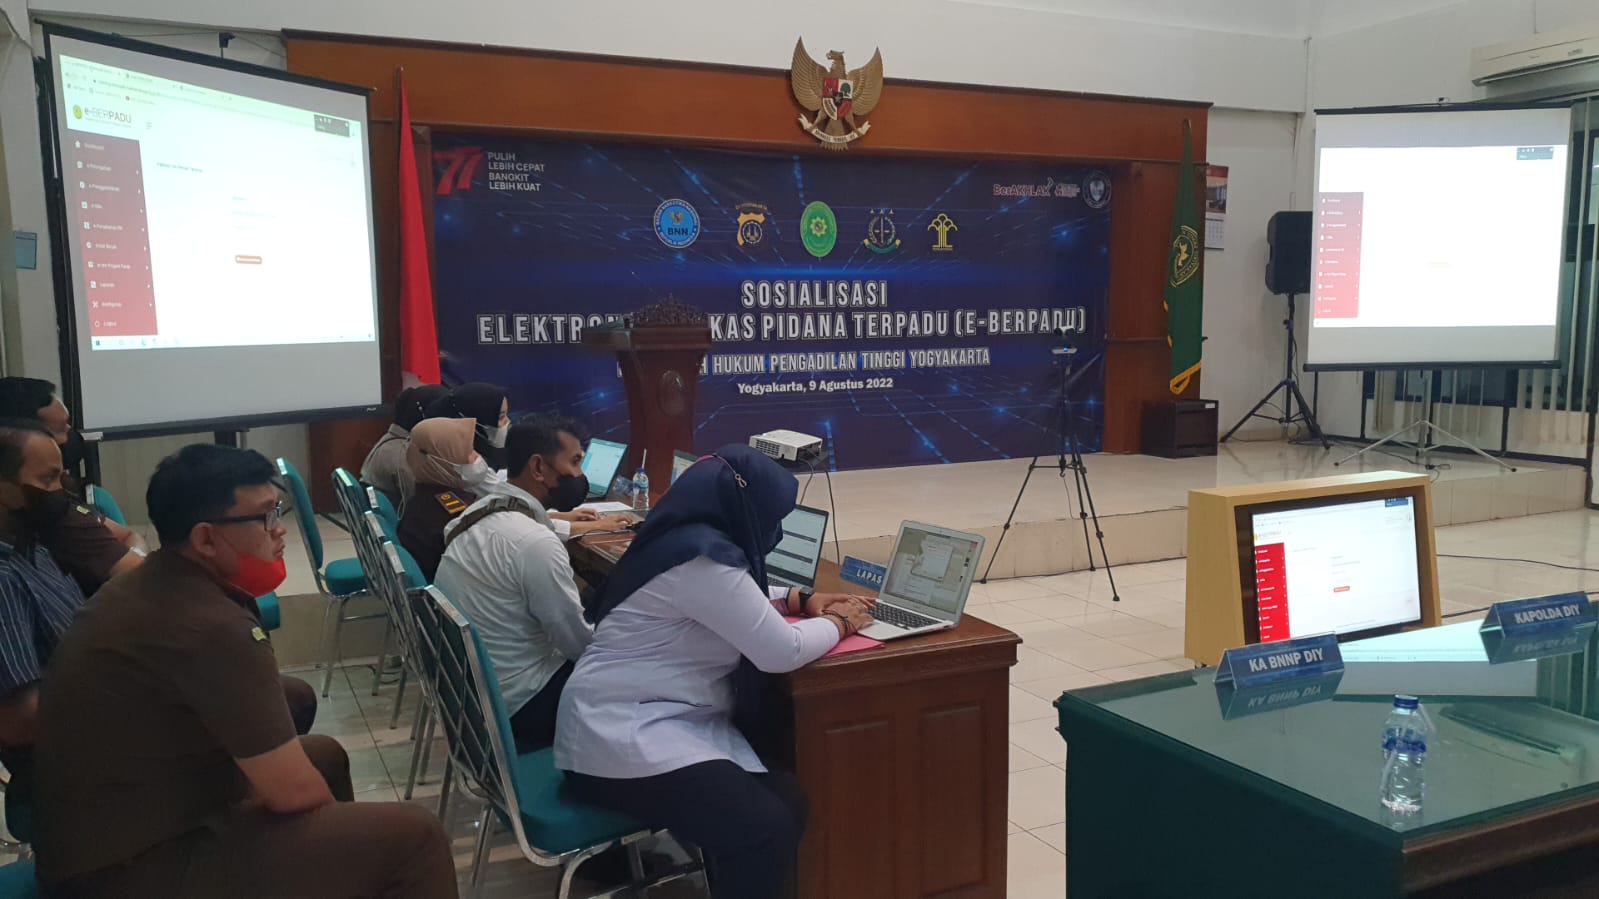 Gladi Bersih Persiapan Sosialisasi Aplikasi e-Berpadu di Pengadilan Tinggi Yogyakarta